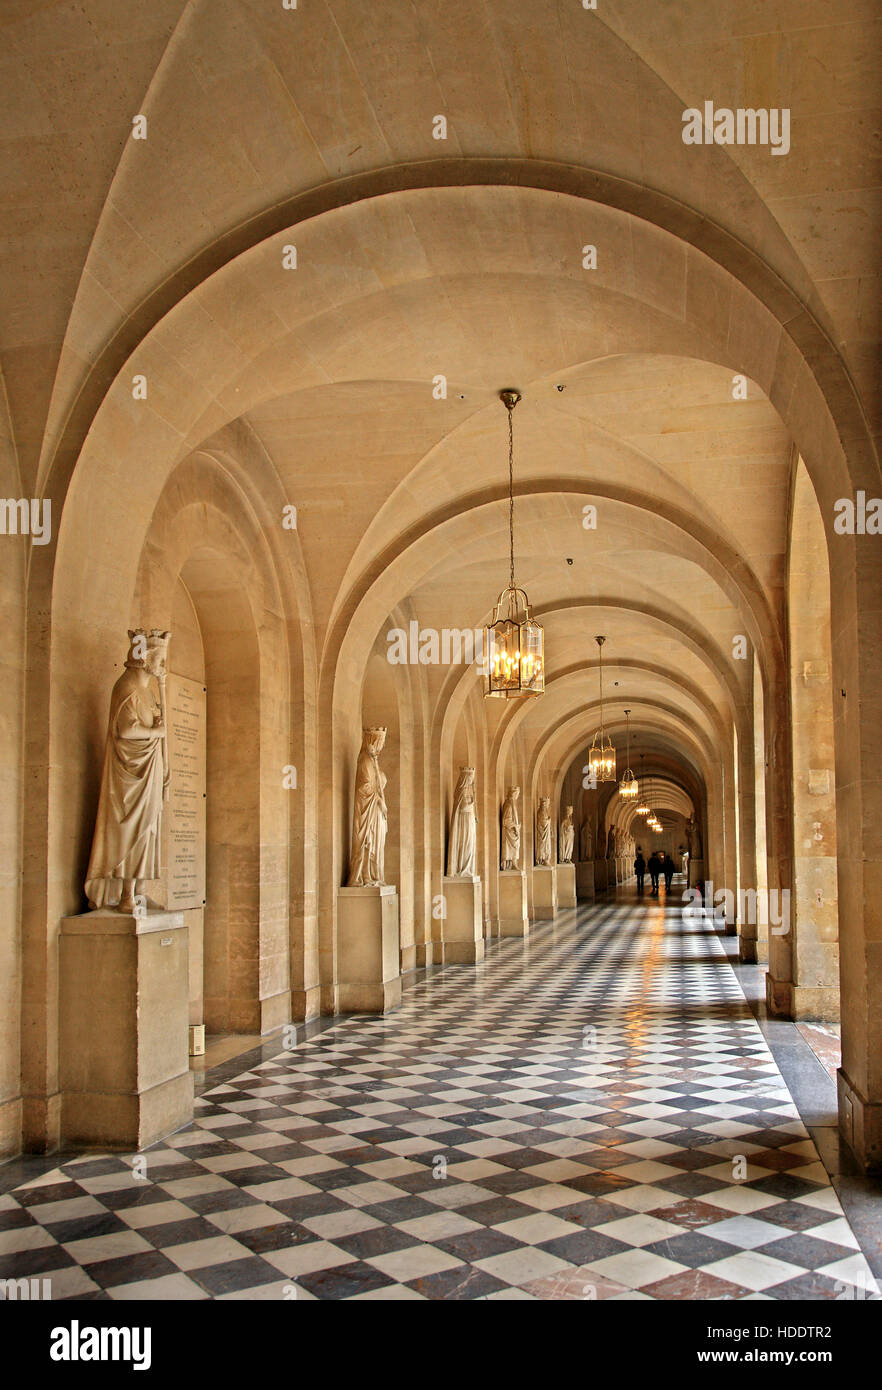 Arcade im Palast von Versailles, Frankreich. Stockfoto